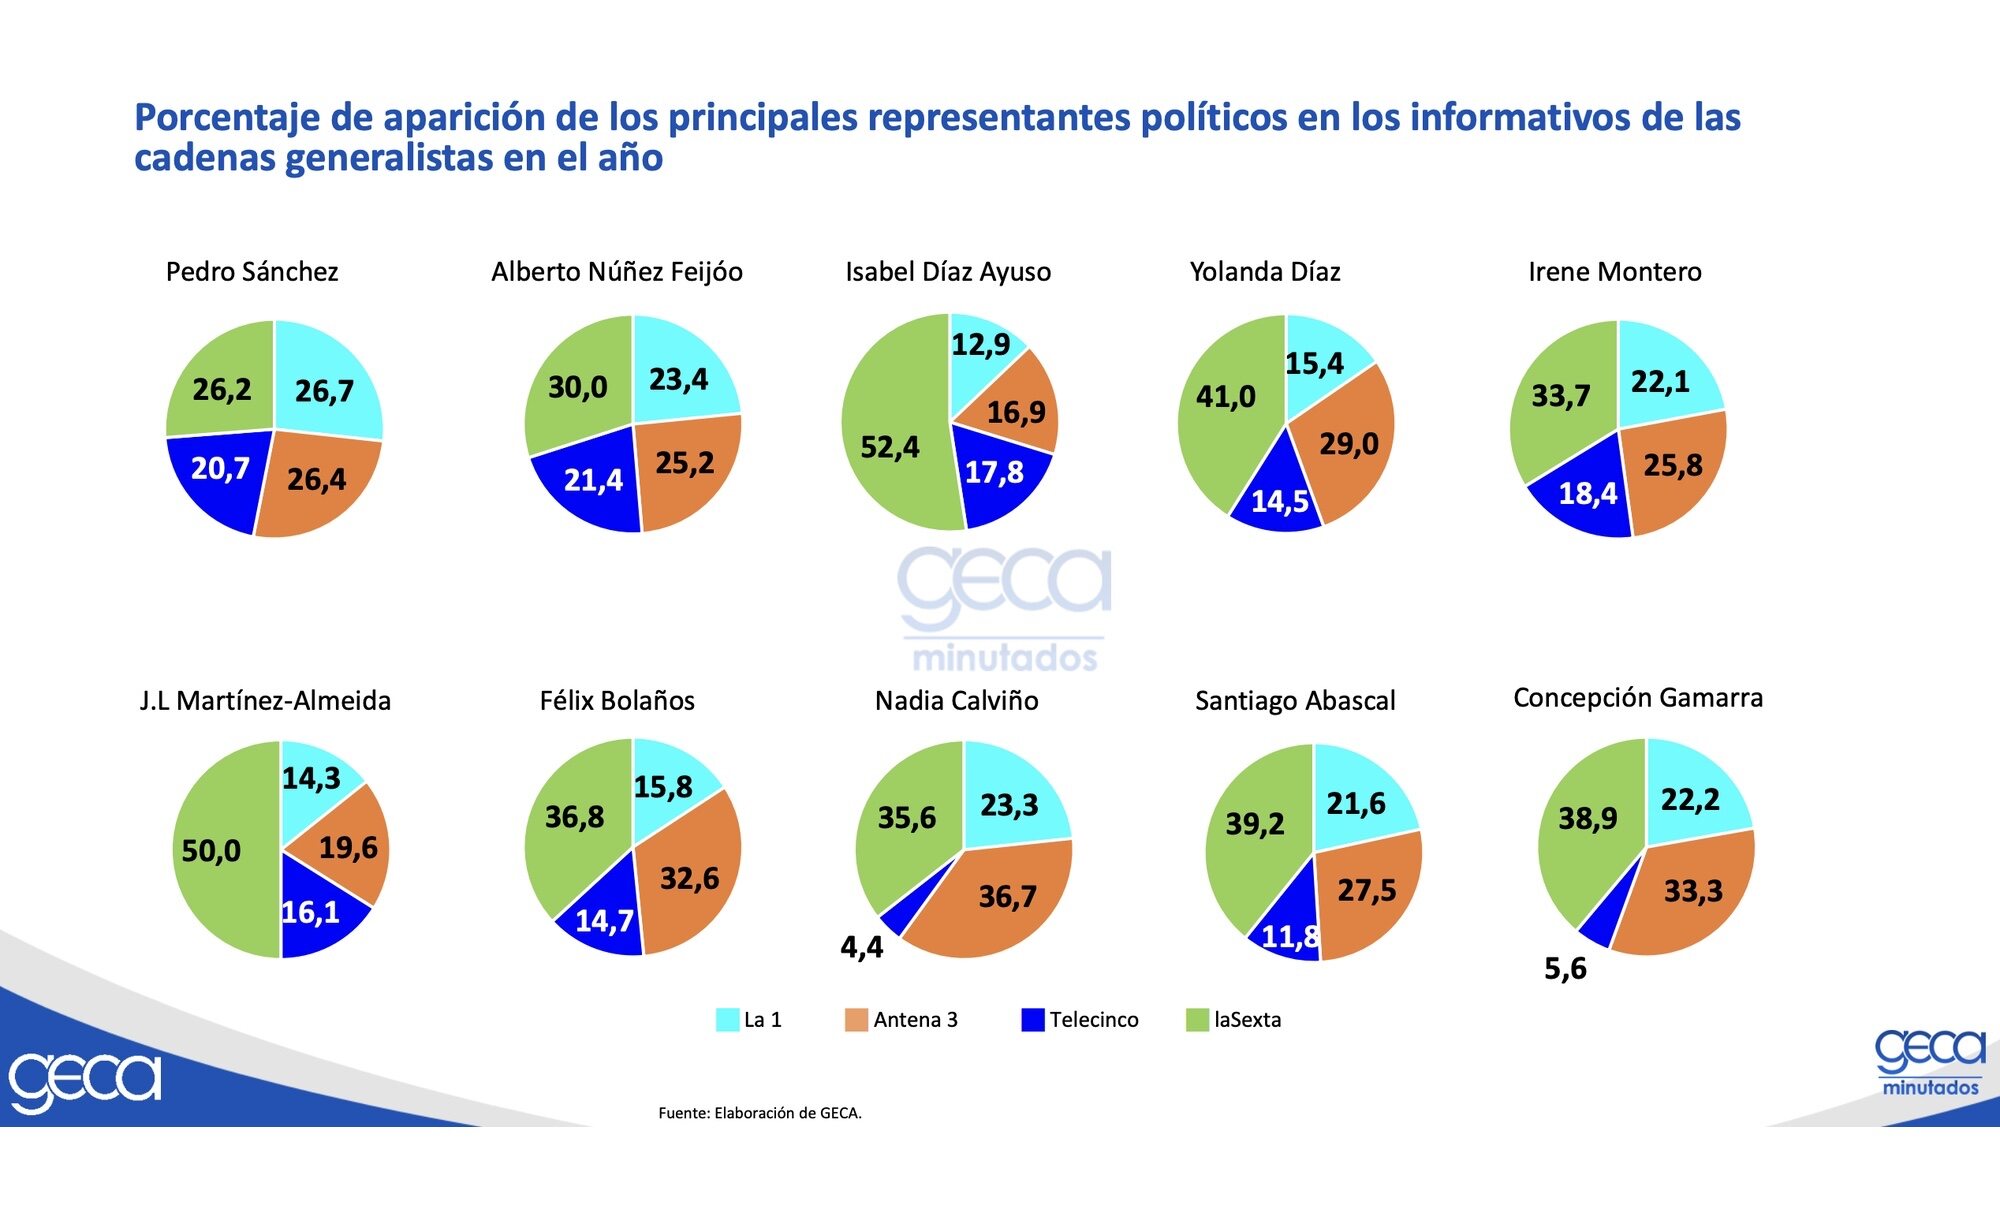 Porcentaje de aparición de los políticos en informativos